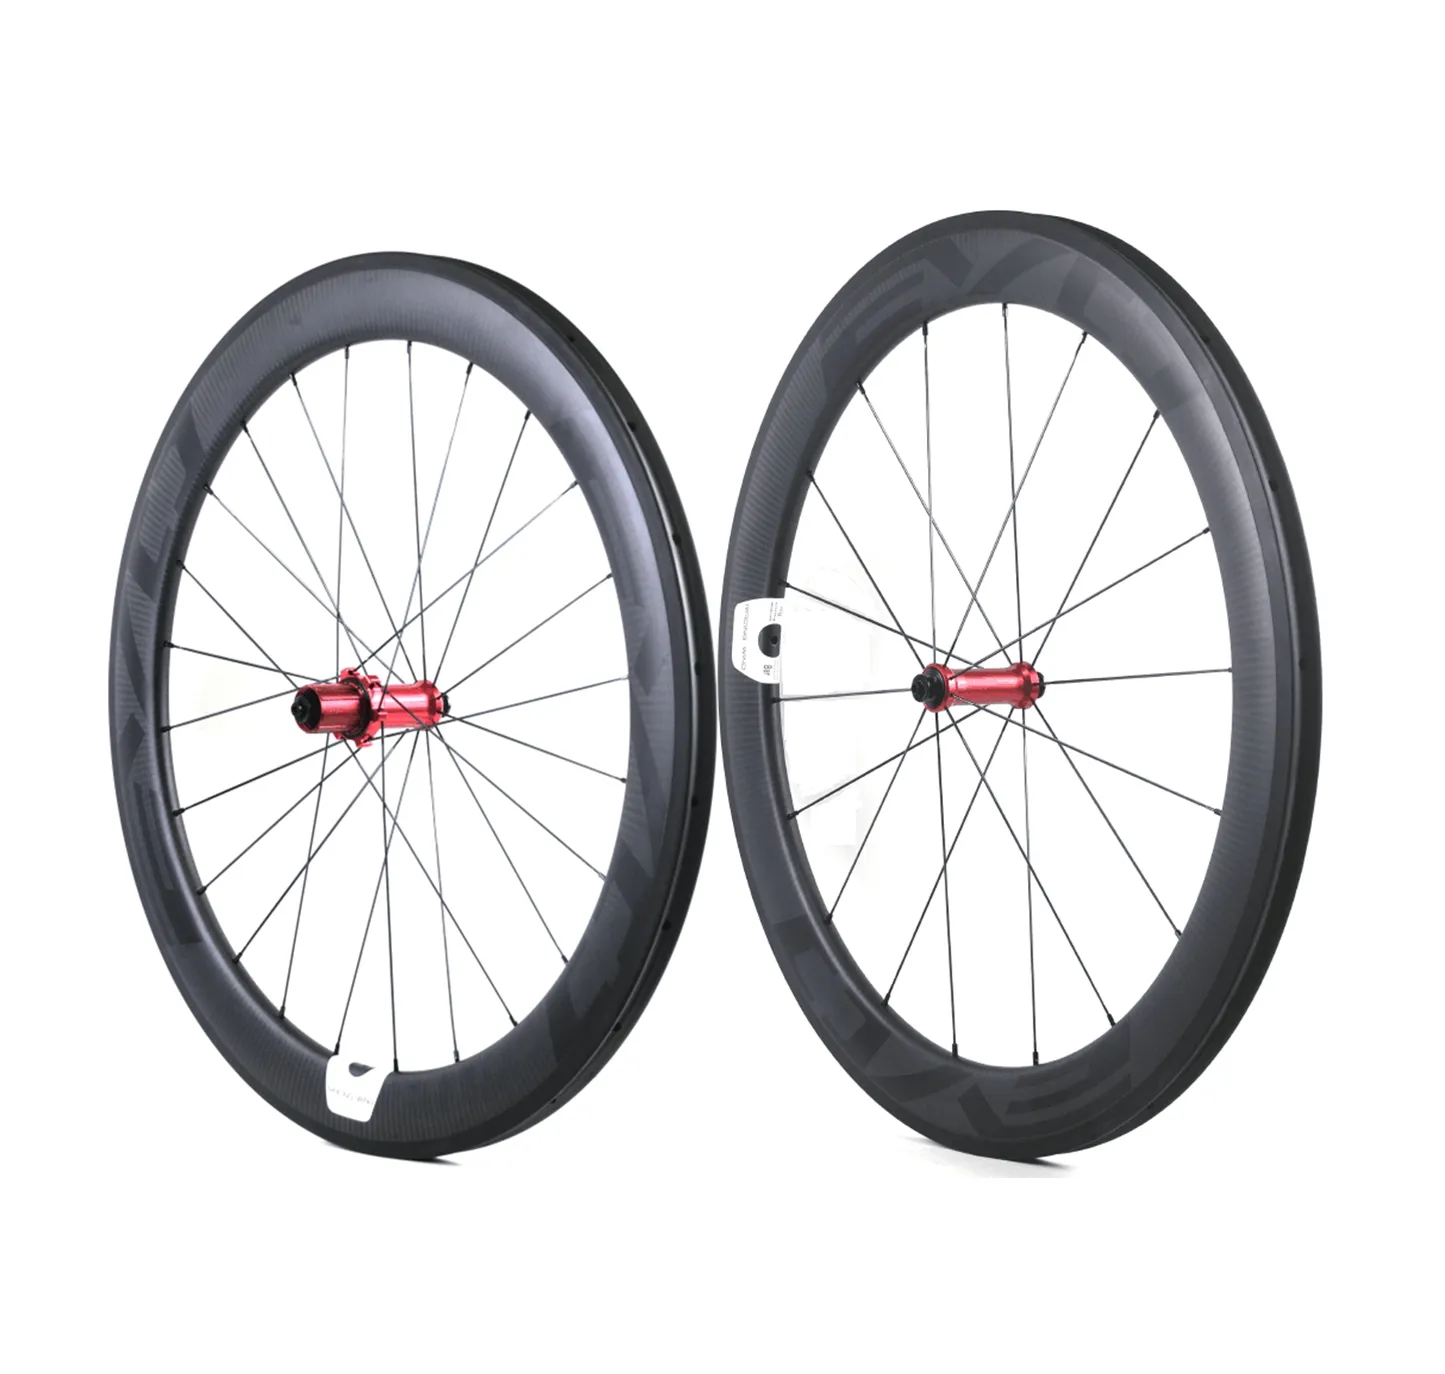 EVO Carbon-Rennradräder, 60 mm Tiefe, 25 mm Breite, Vollcarbon-Drahtreifen/Rohr-Laufradsatz mit Straight Pull-Naben, anpassbares Logo